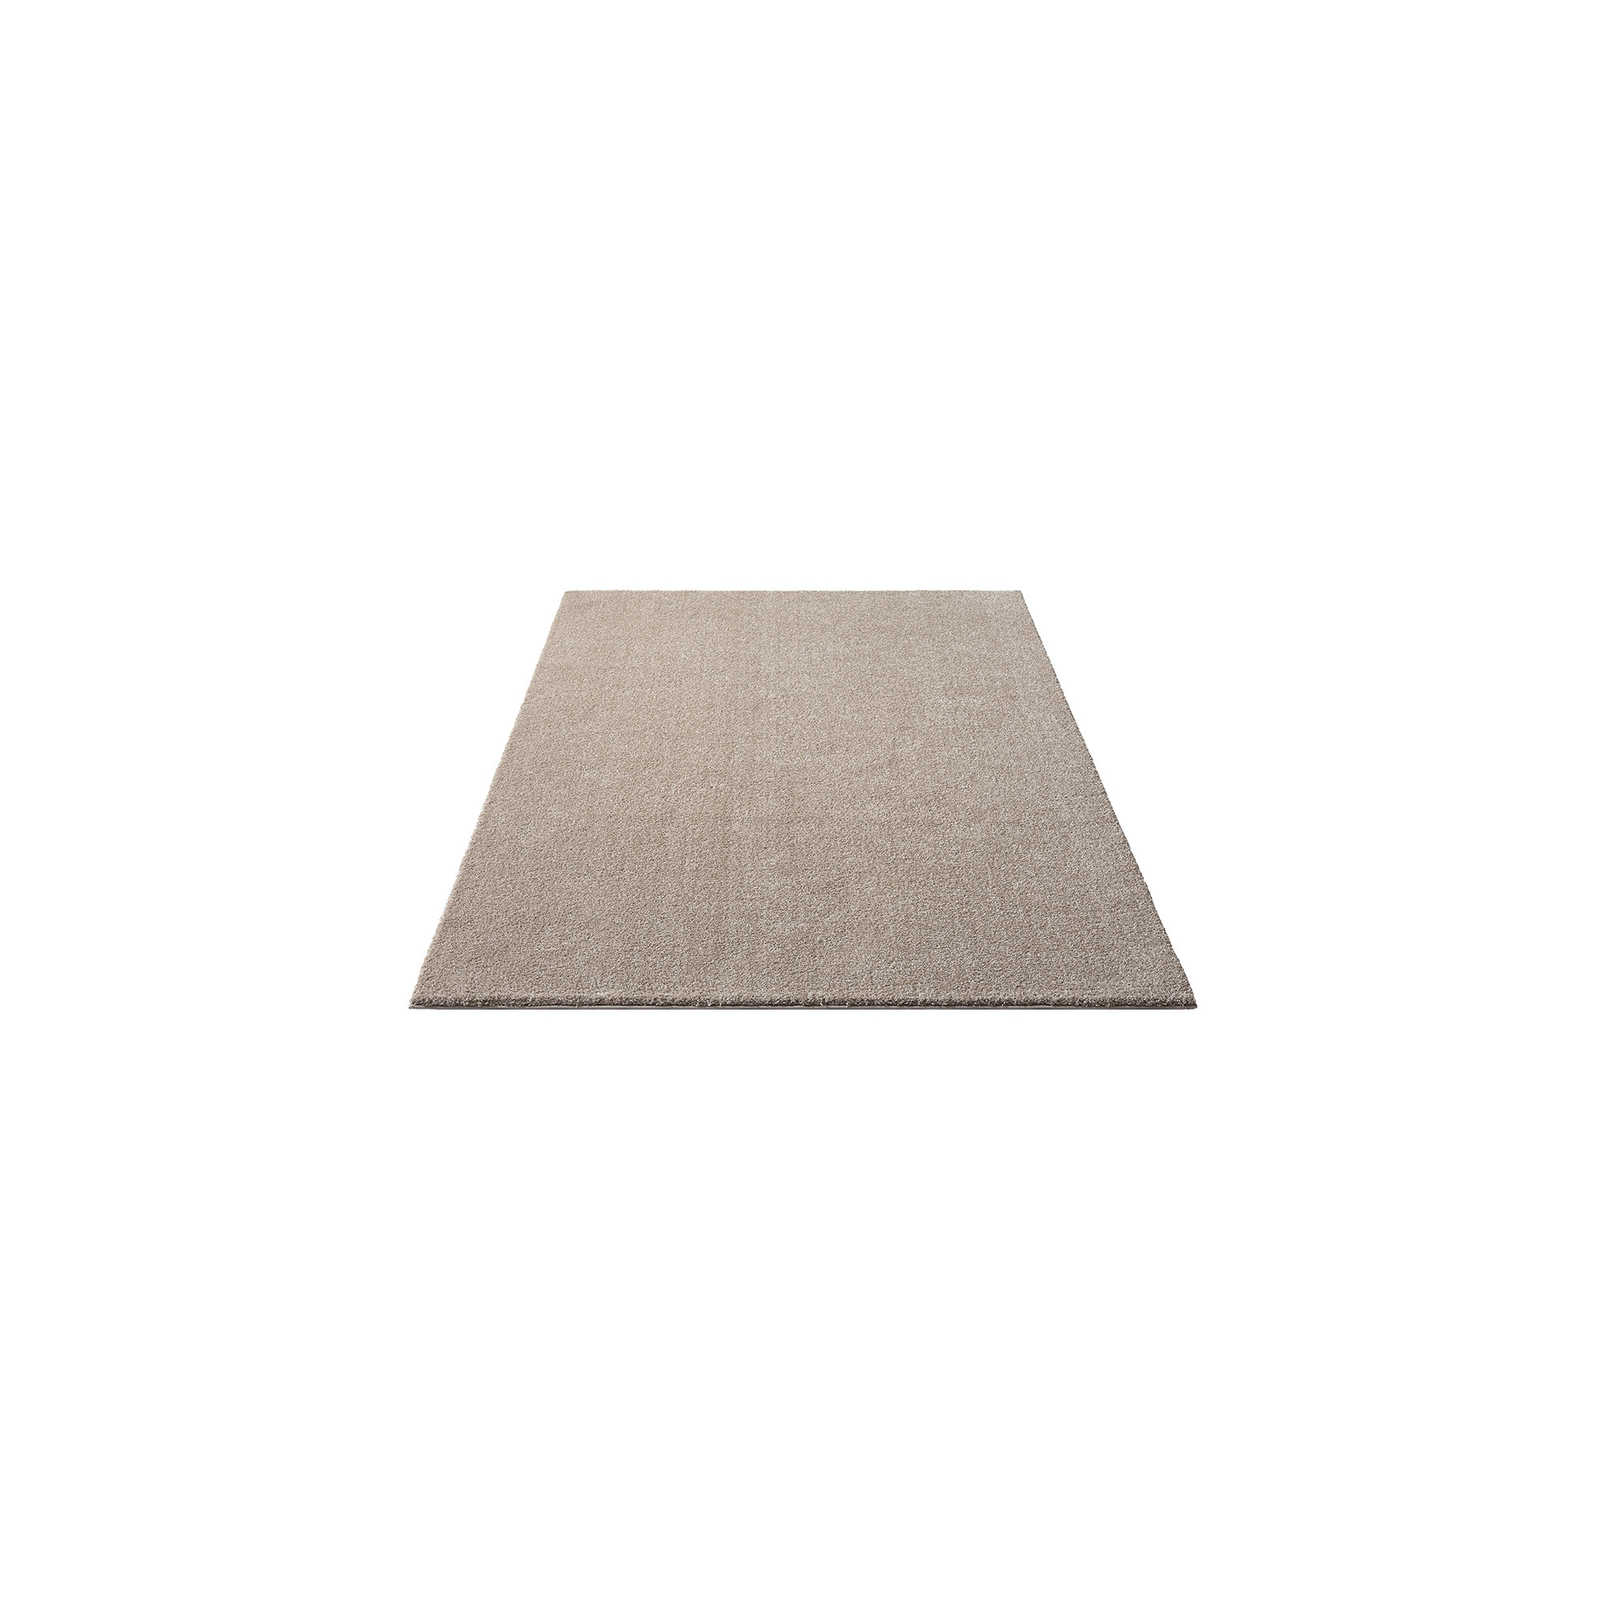 Sanfter Kurzflor Teppich in Beige – 150 x 80 cm
